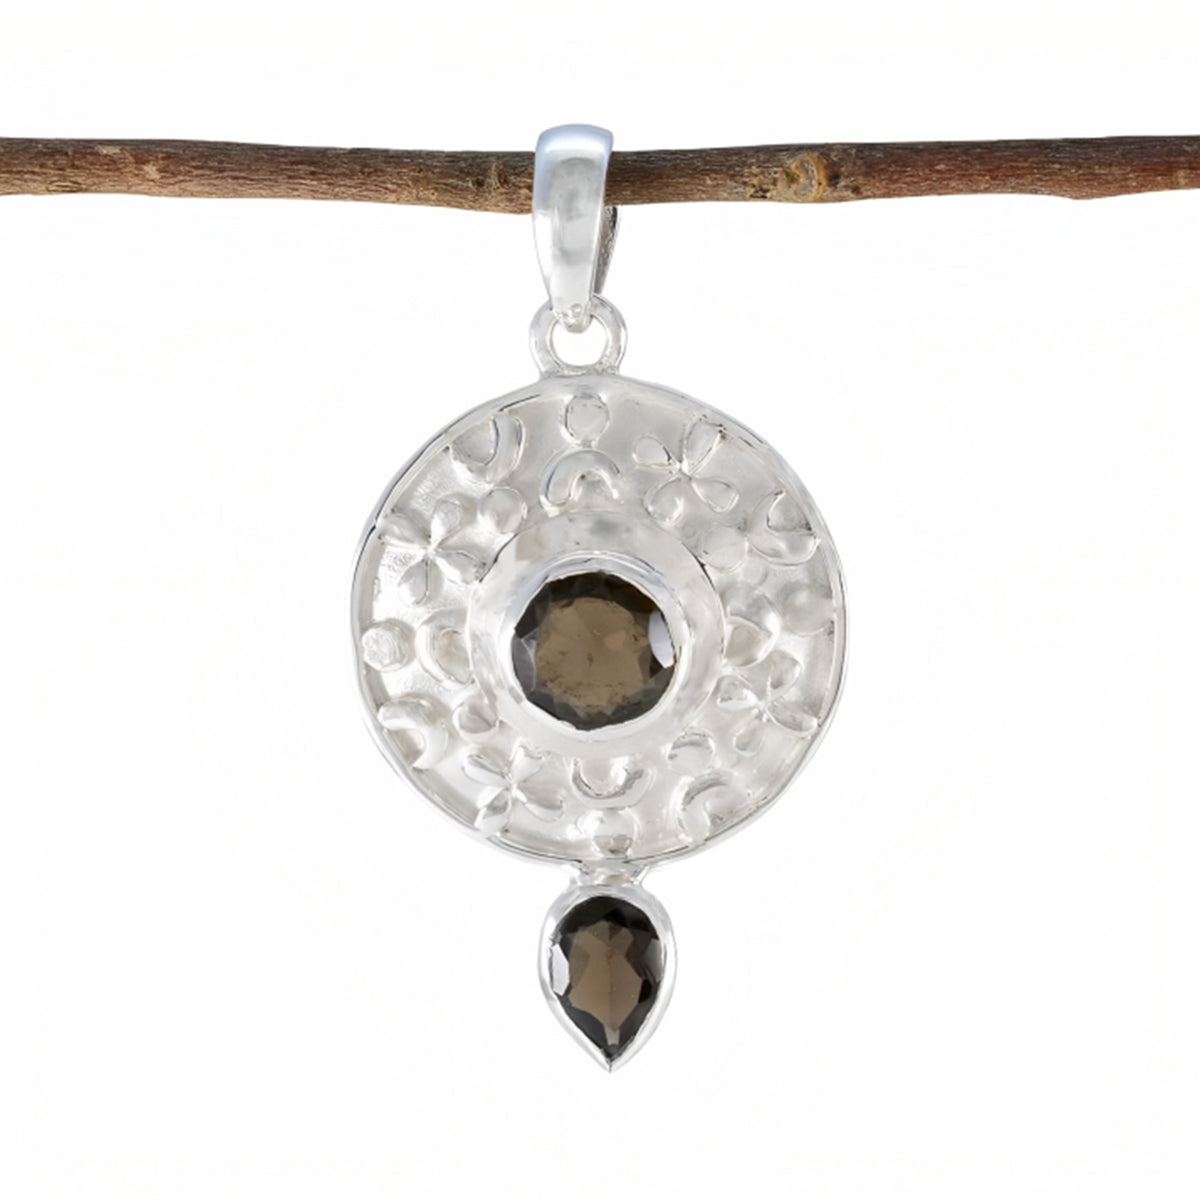 Riyo bonita piedra preciosa multifacetada cuarzo ahumado marrón colgante de plata esterlina regalo para mujeres